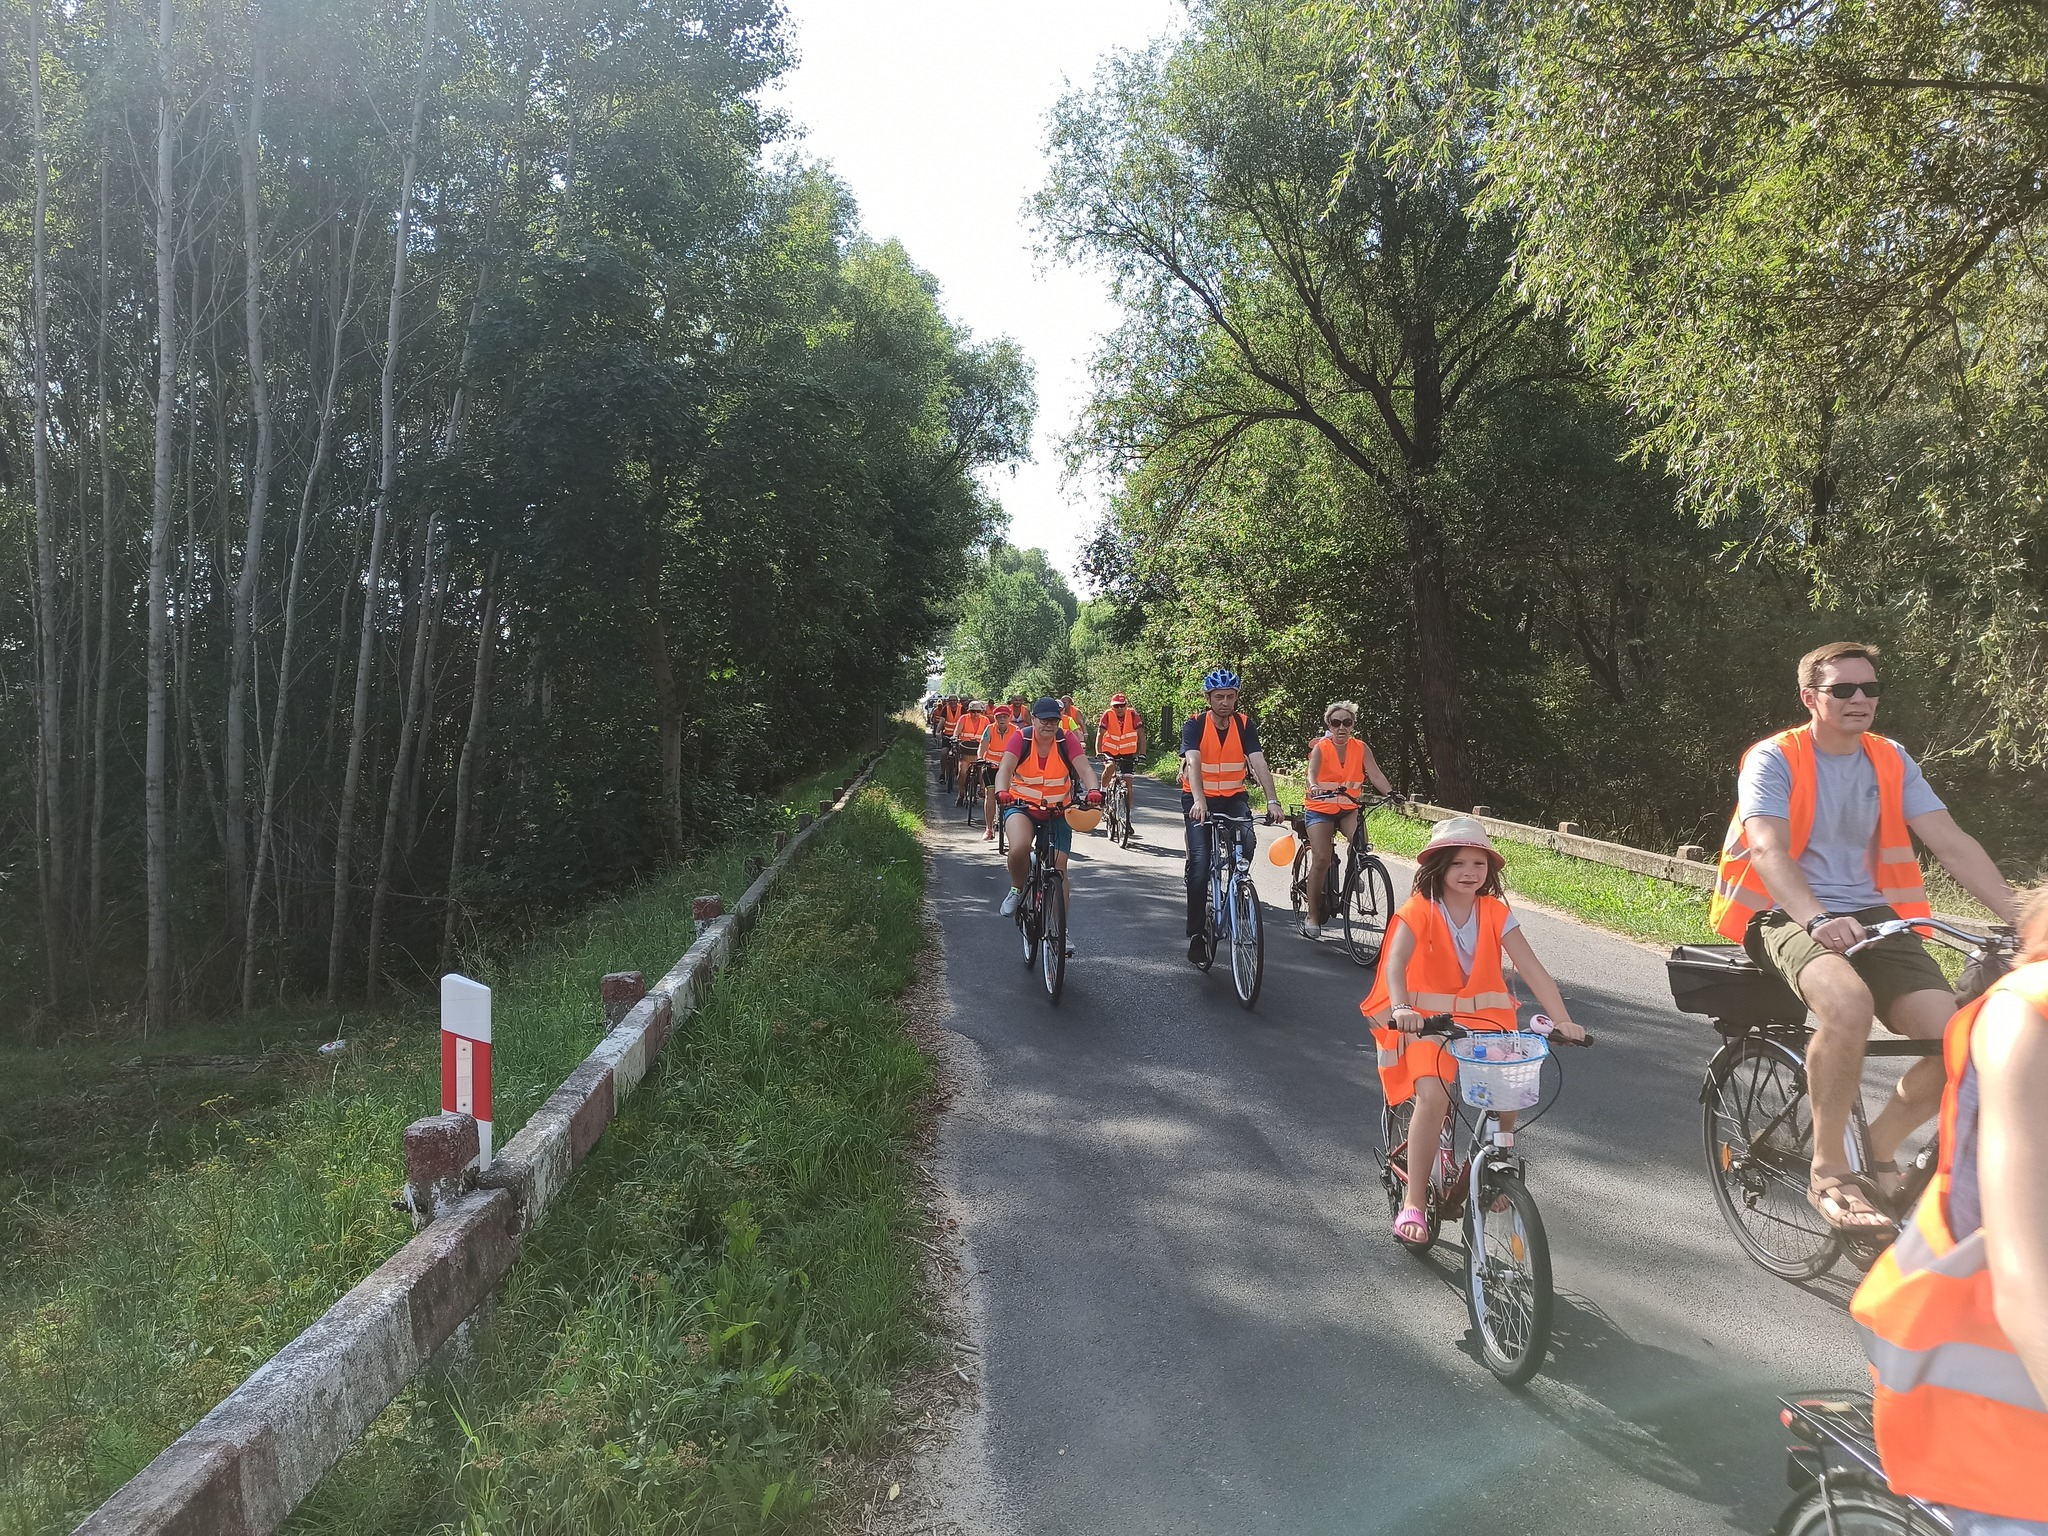 uczestnicy rajdu rowerowego jadą drogą publiczną (przez zalesione tereny), wszyscy mają założone pomarańczowe kamizelki odblaskowe z napisem Odjazdowy Bibliotekarz